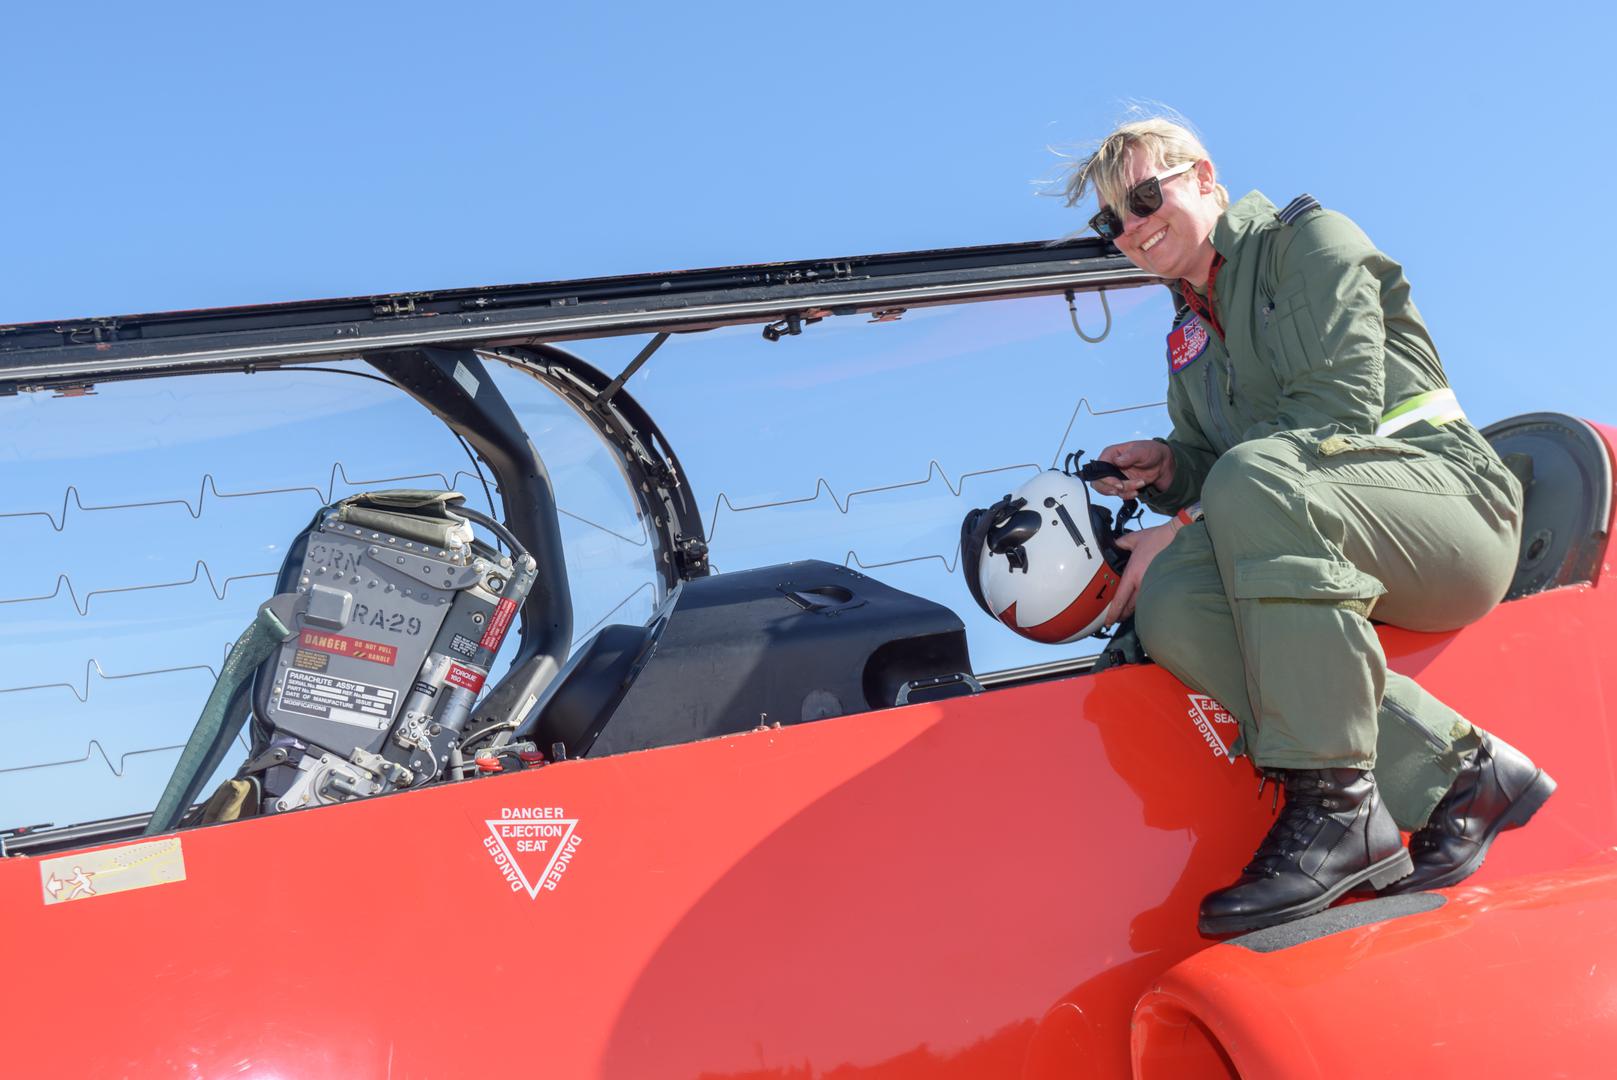 Vođa akrobatske grupe „Red Arrows“ za sezonu 2018. je bojnik Martin Pert, dugogodišnji iskusni pilot na avionima Hawk T-1. Pilot je „Red Arrows“ u ulozi pratitelja od 2012. a ovo mu je prva sezona na poziciji vođe tima.